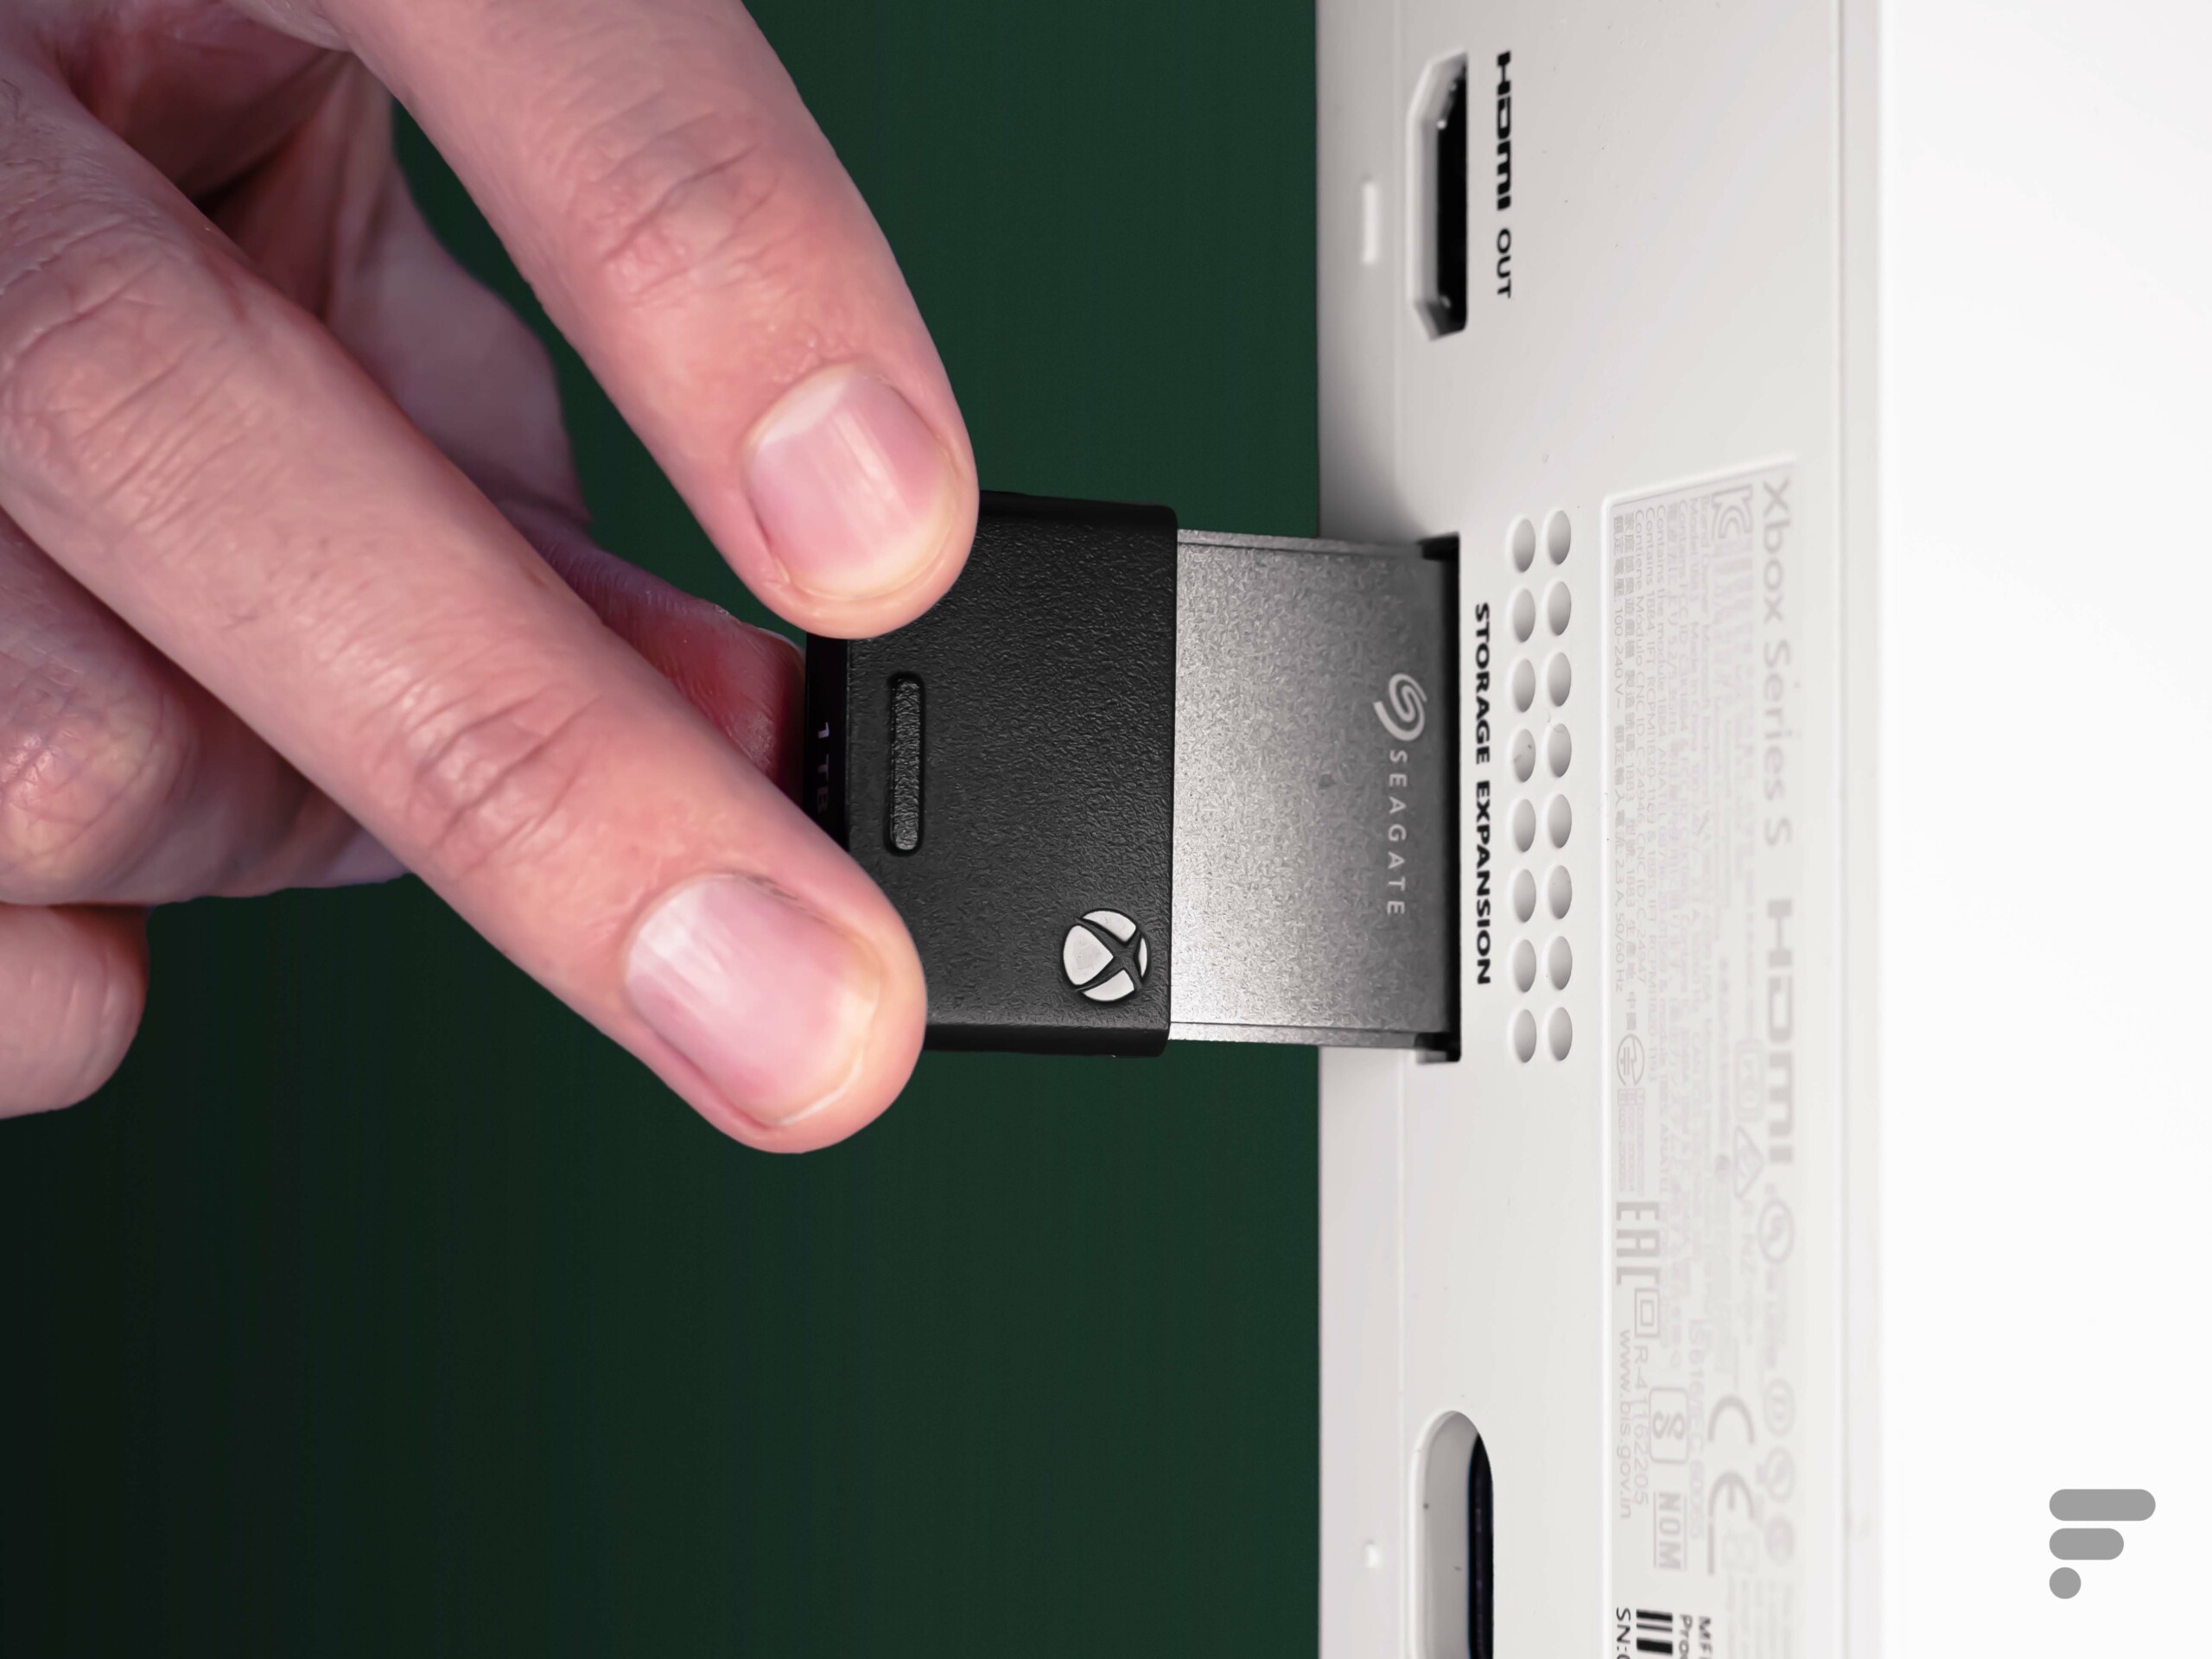 Test de la carte d'extension Seagate pour Xbox Series X